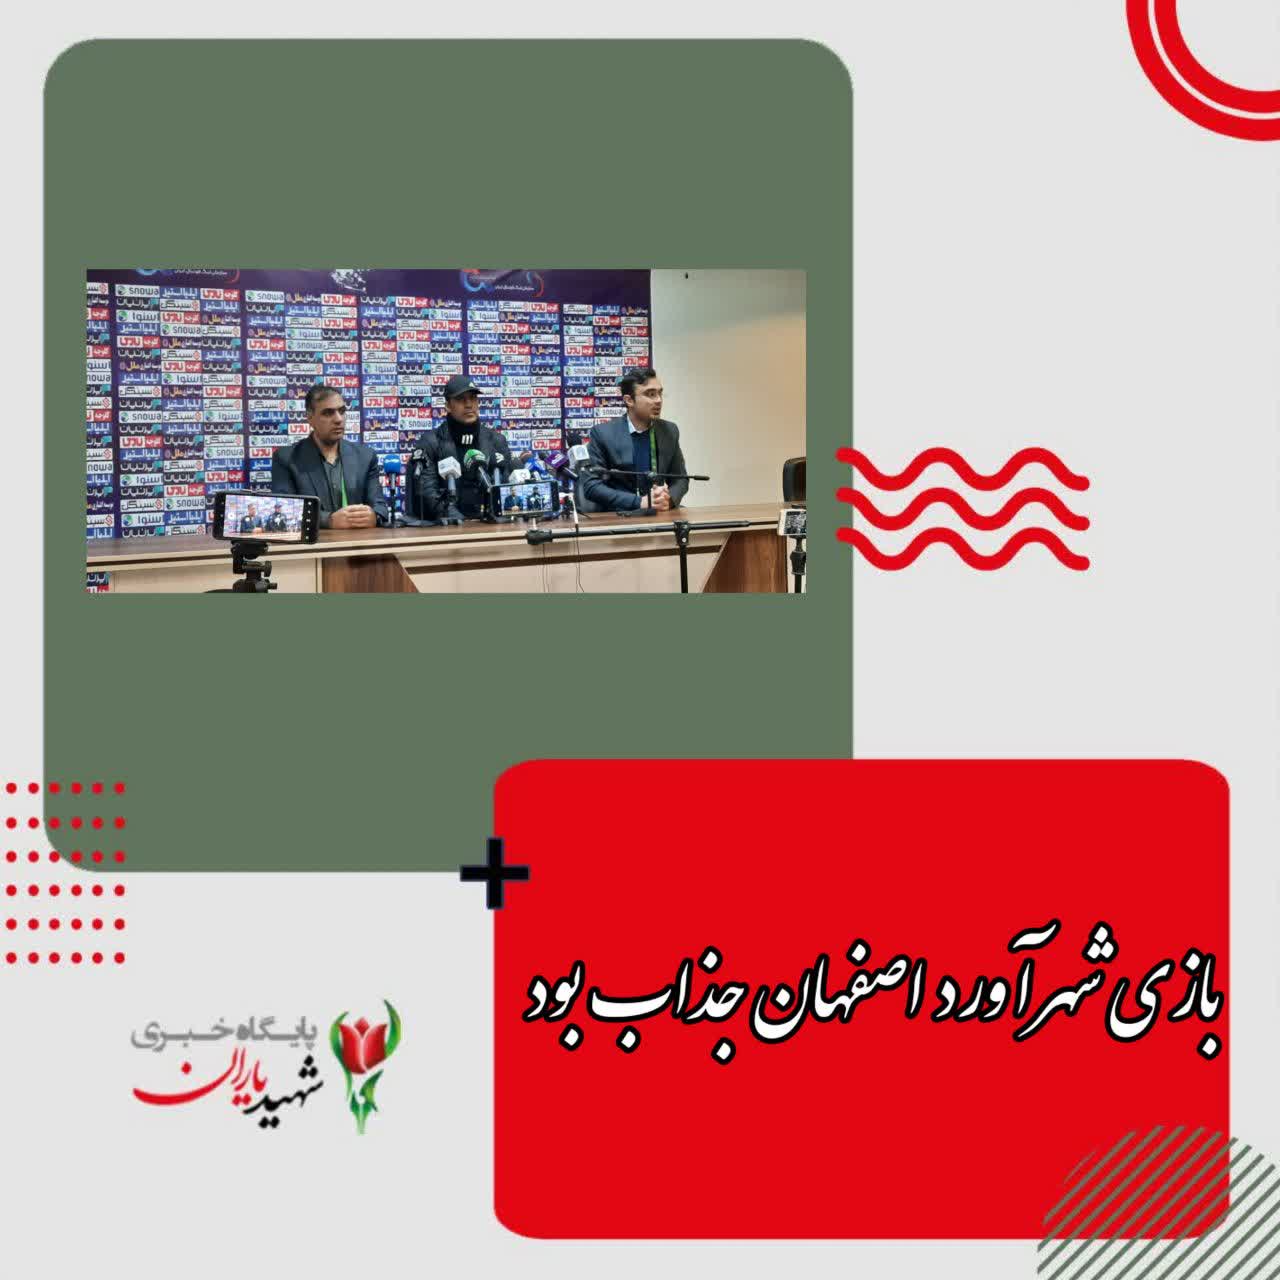 نشست خبری بعد از بازی شهرآورد اصفهان